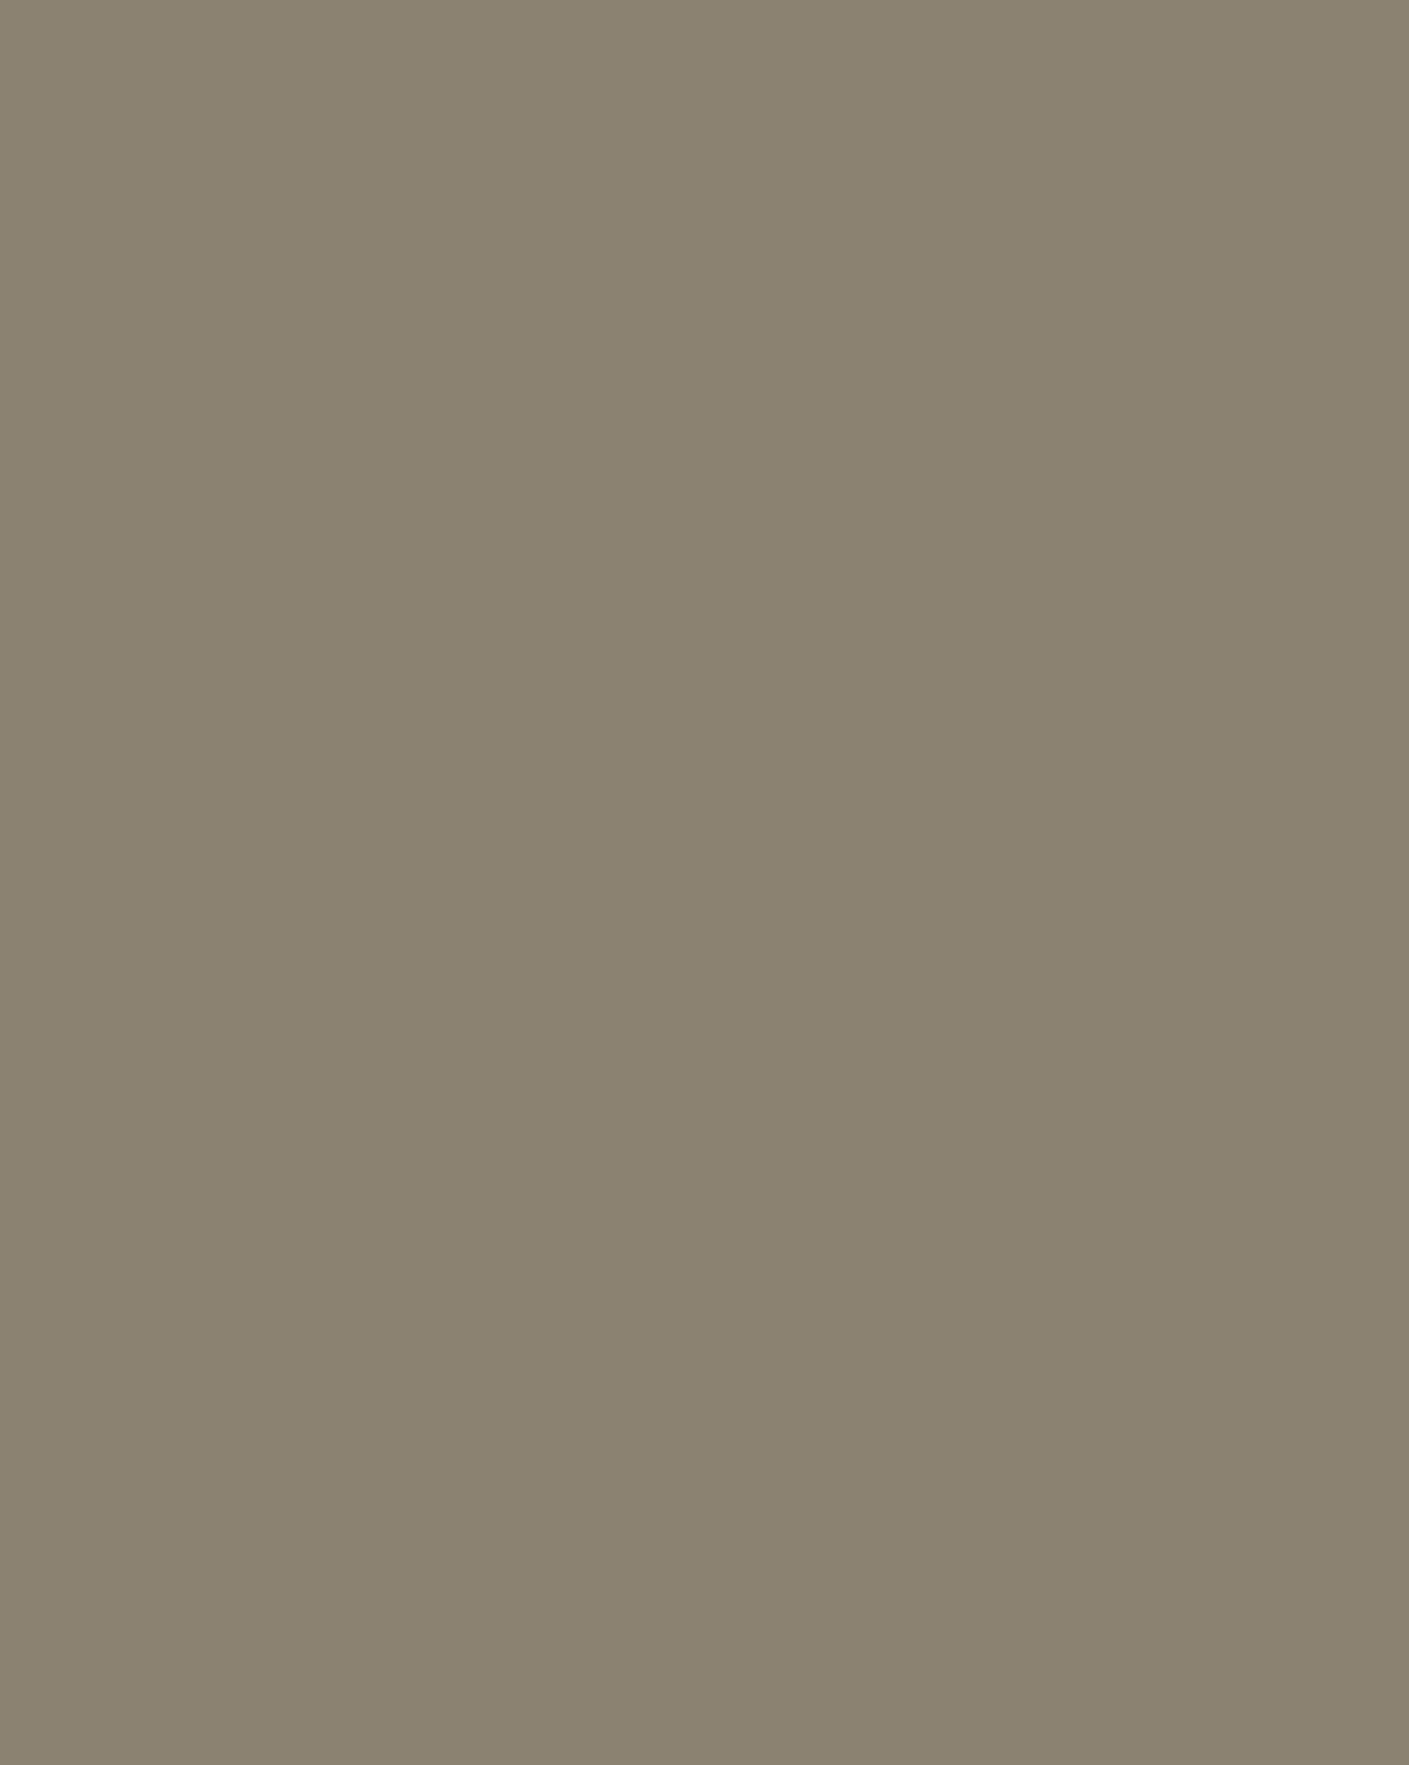 Валентин Серов. Поморы (фрагмент). 1894. Государственная Третьяковская галерея, Москва